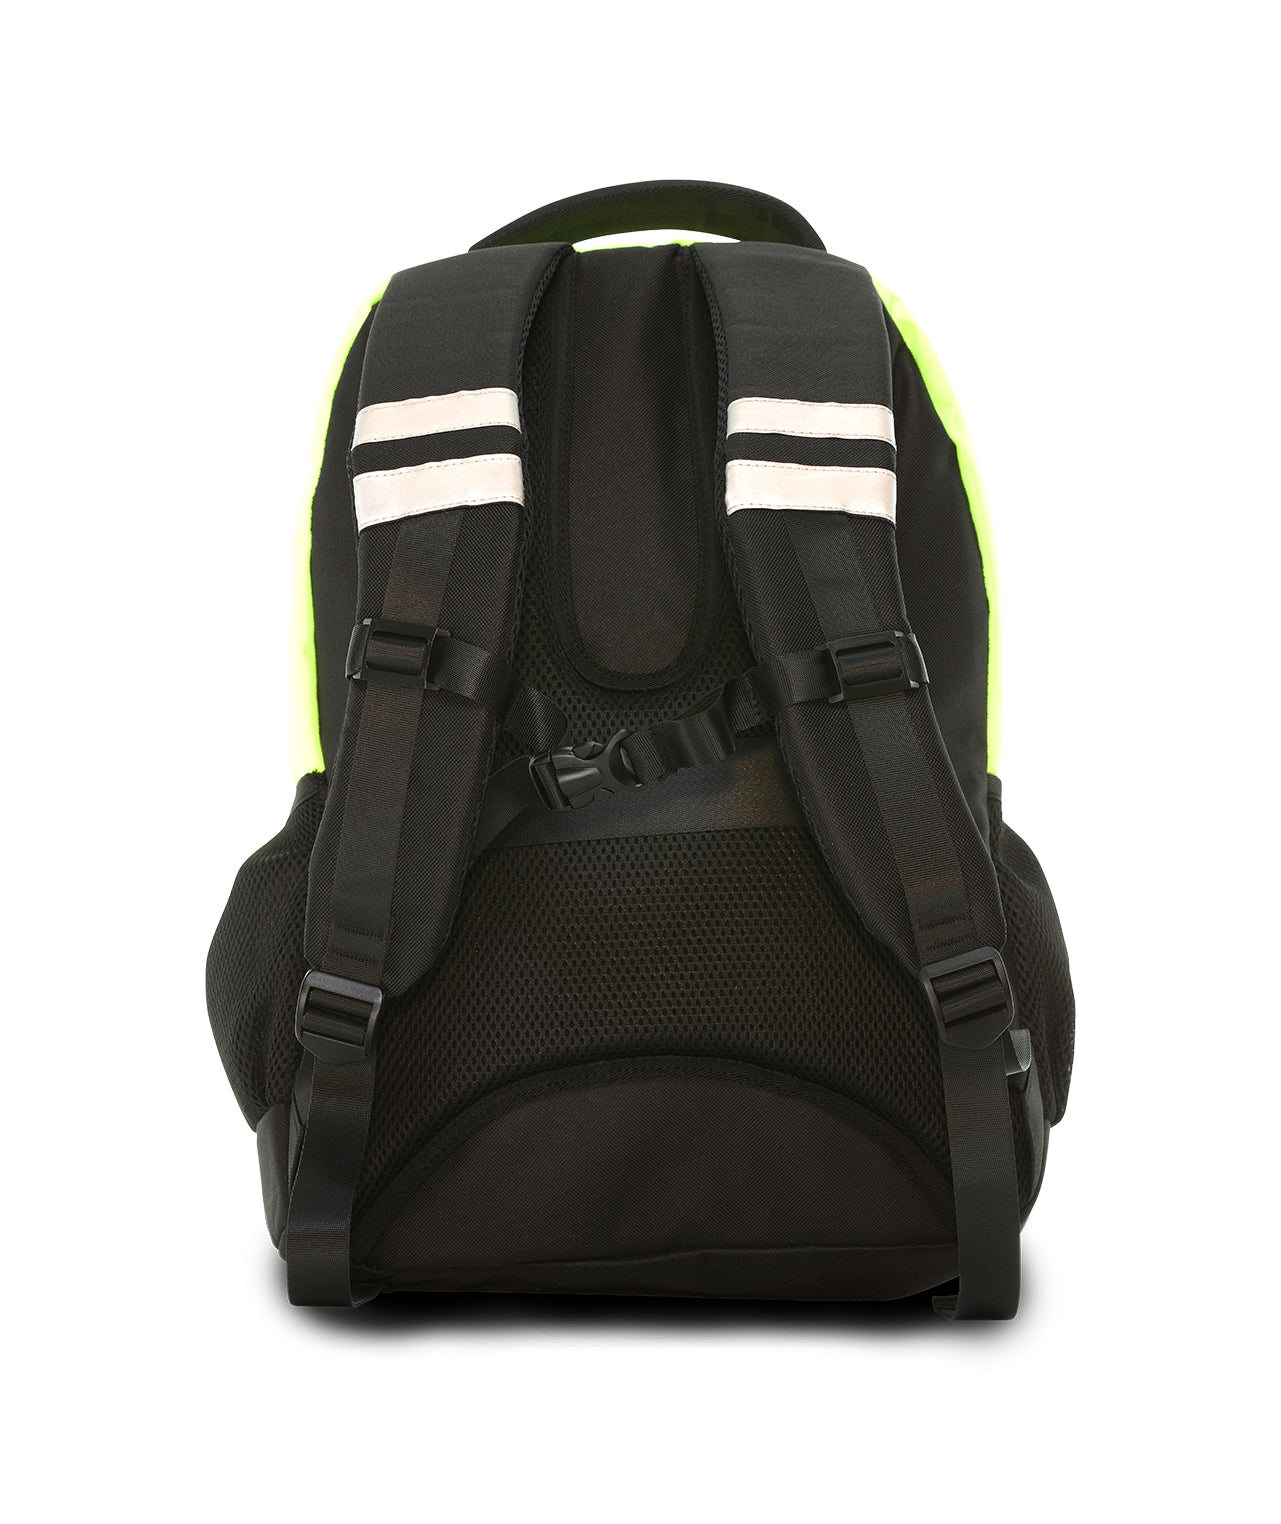 931STLM Safety Backpack: Hi-Vis Padded Laptop Bag: Fit 17inch Laptop